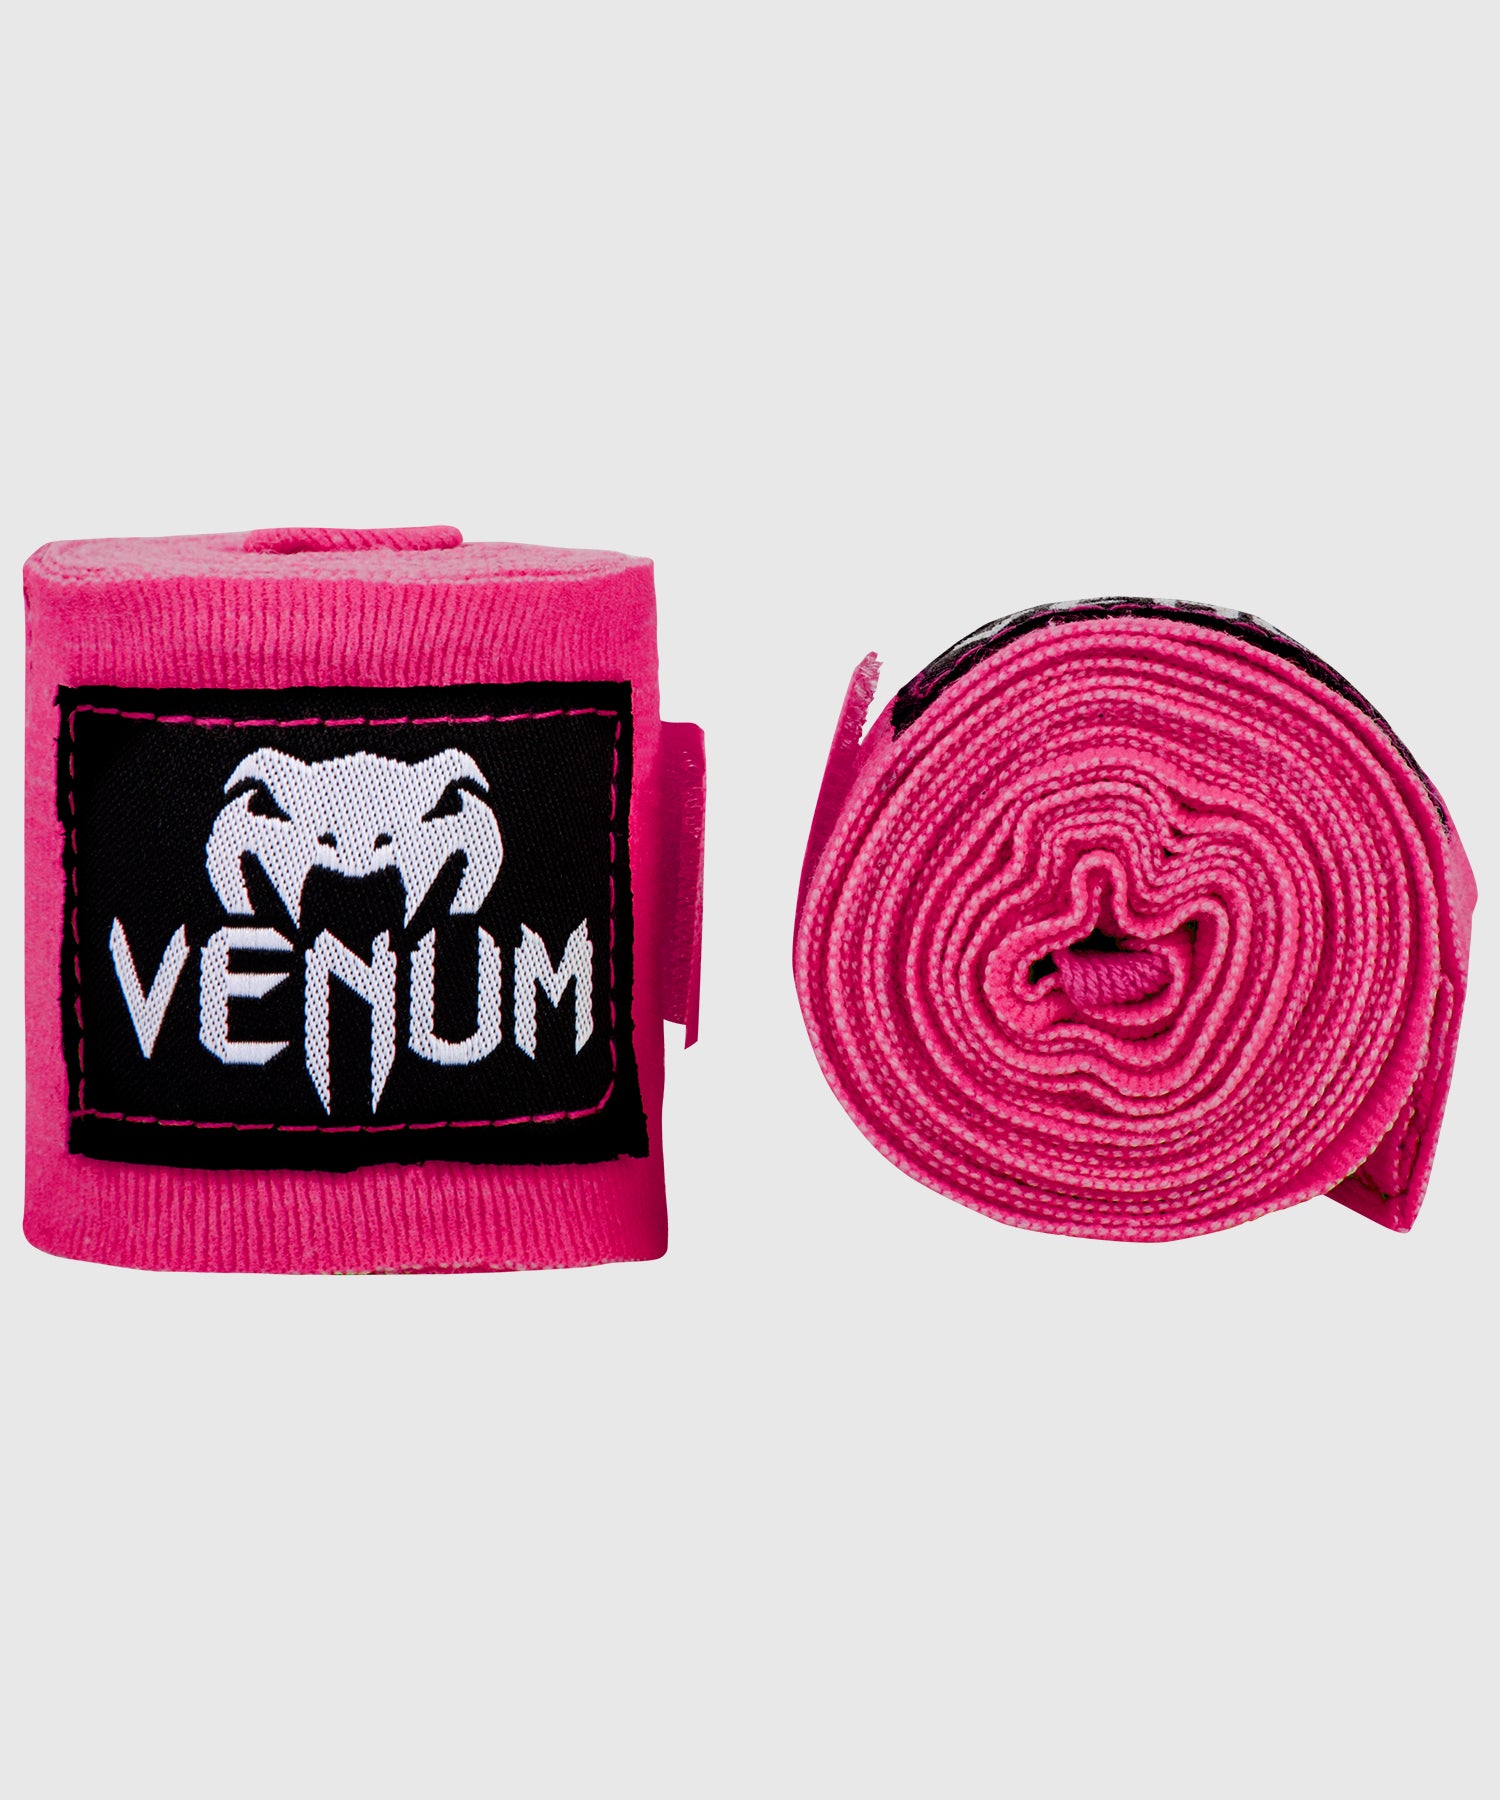 Bandes de boxe Venum Kontact - 2,5 mètres - Rose fluo (Neo) - Bandages de boxe